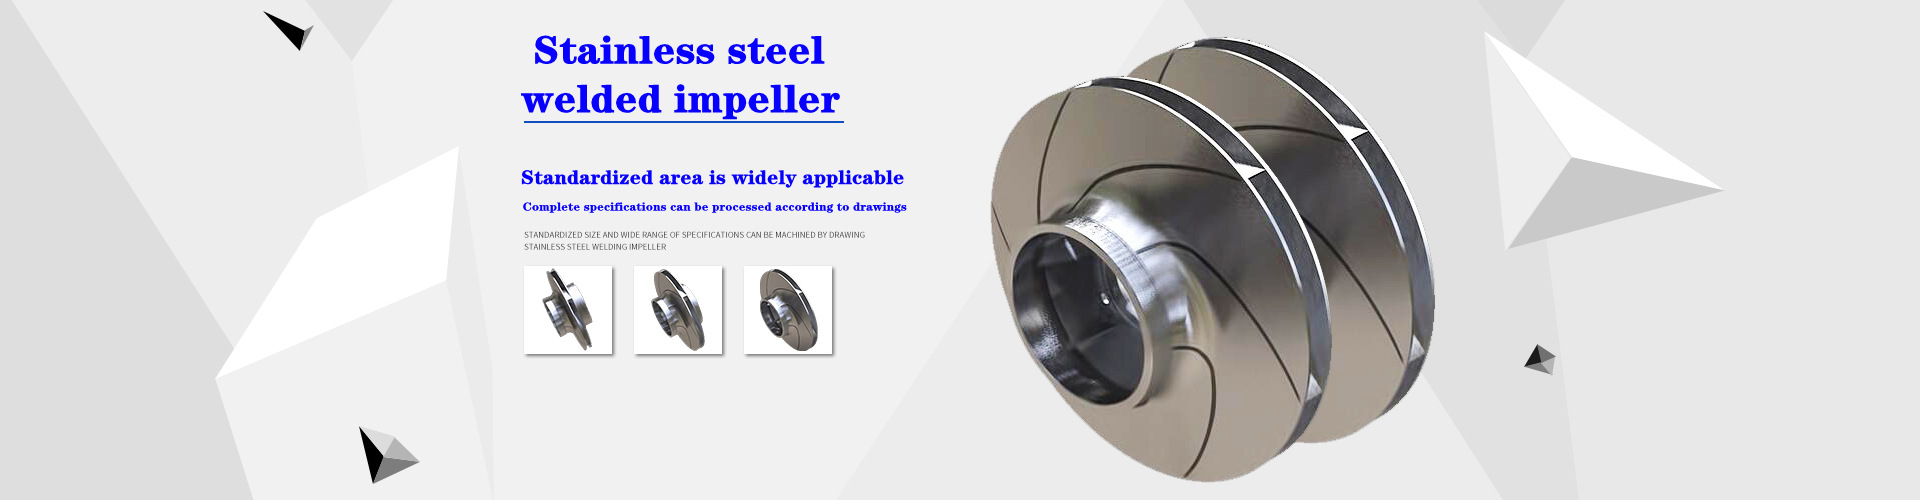 Stainless steel welded impeller
Welded water pump impeller
Laser welded impeller
304 welded impeller
316 welded impeller